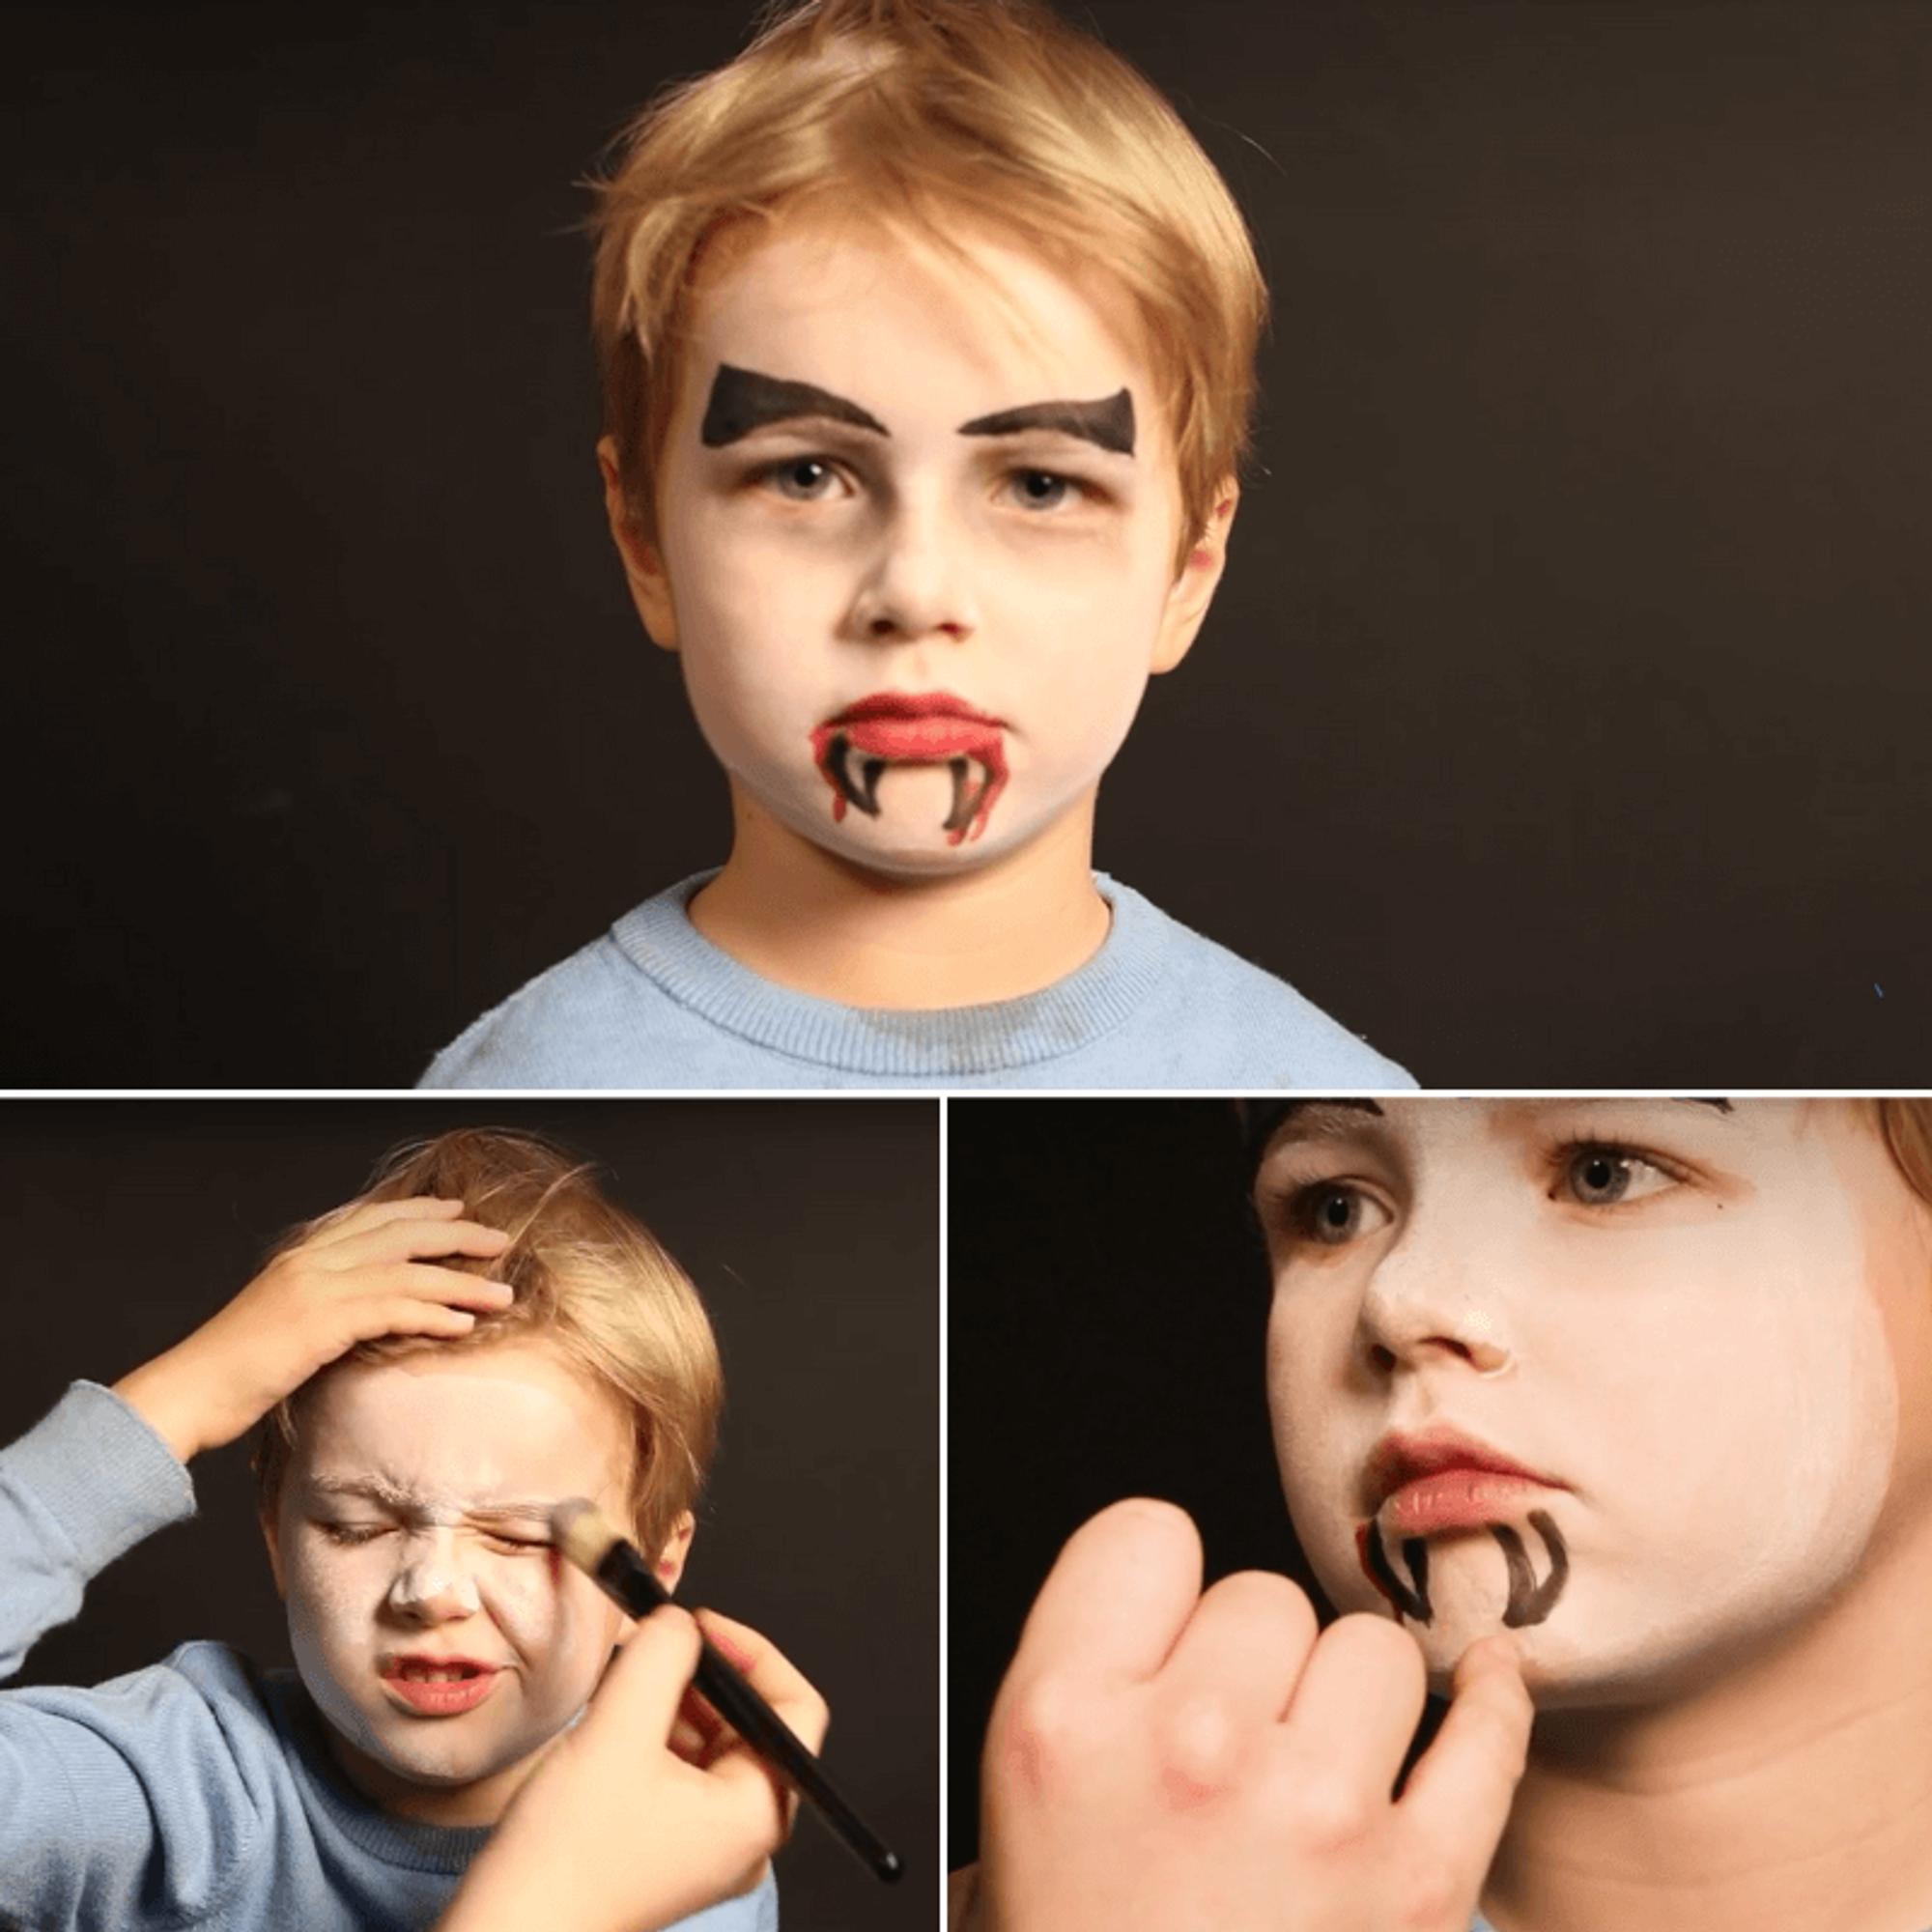 Kinder an Halloween als Vampir schminken